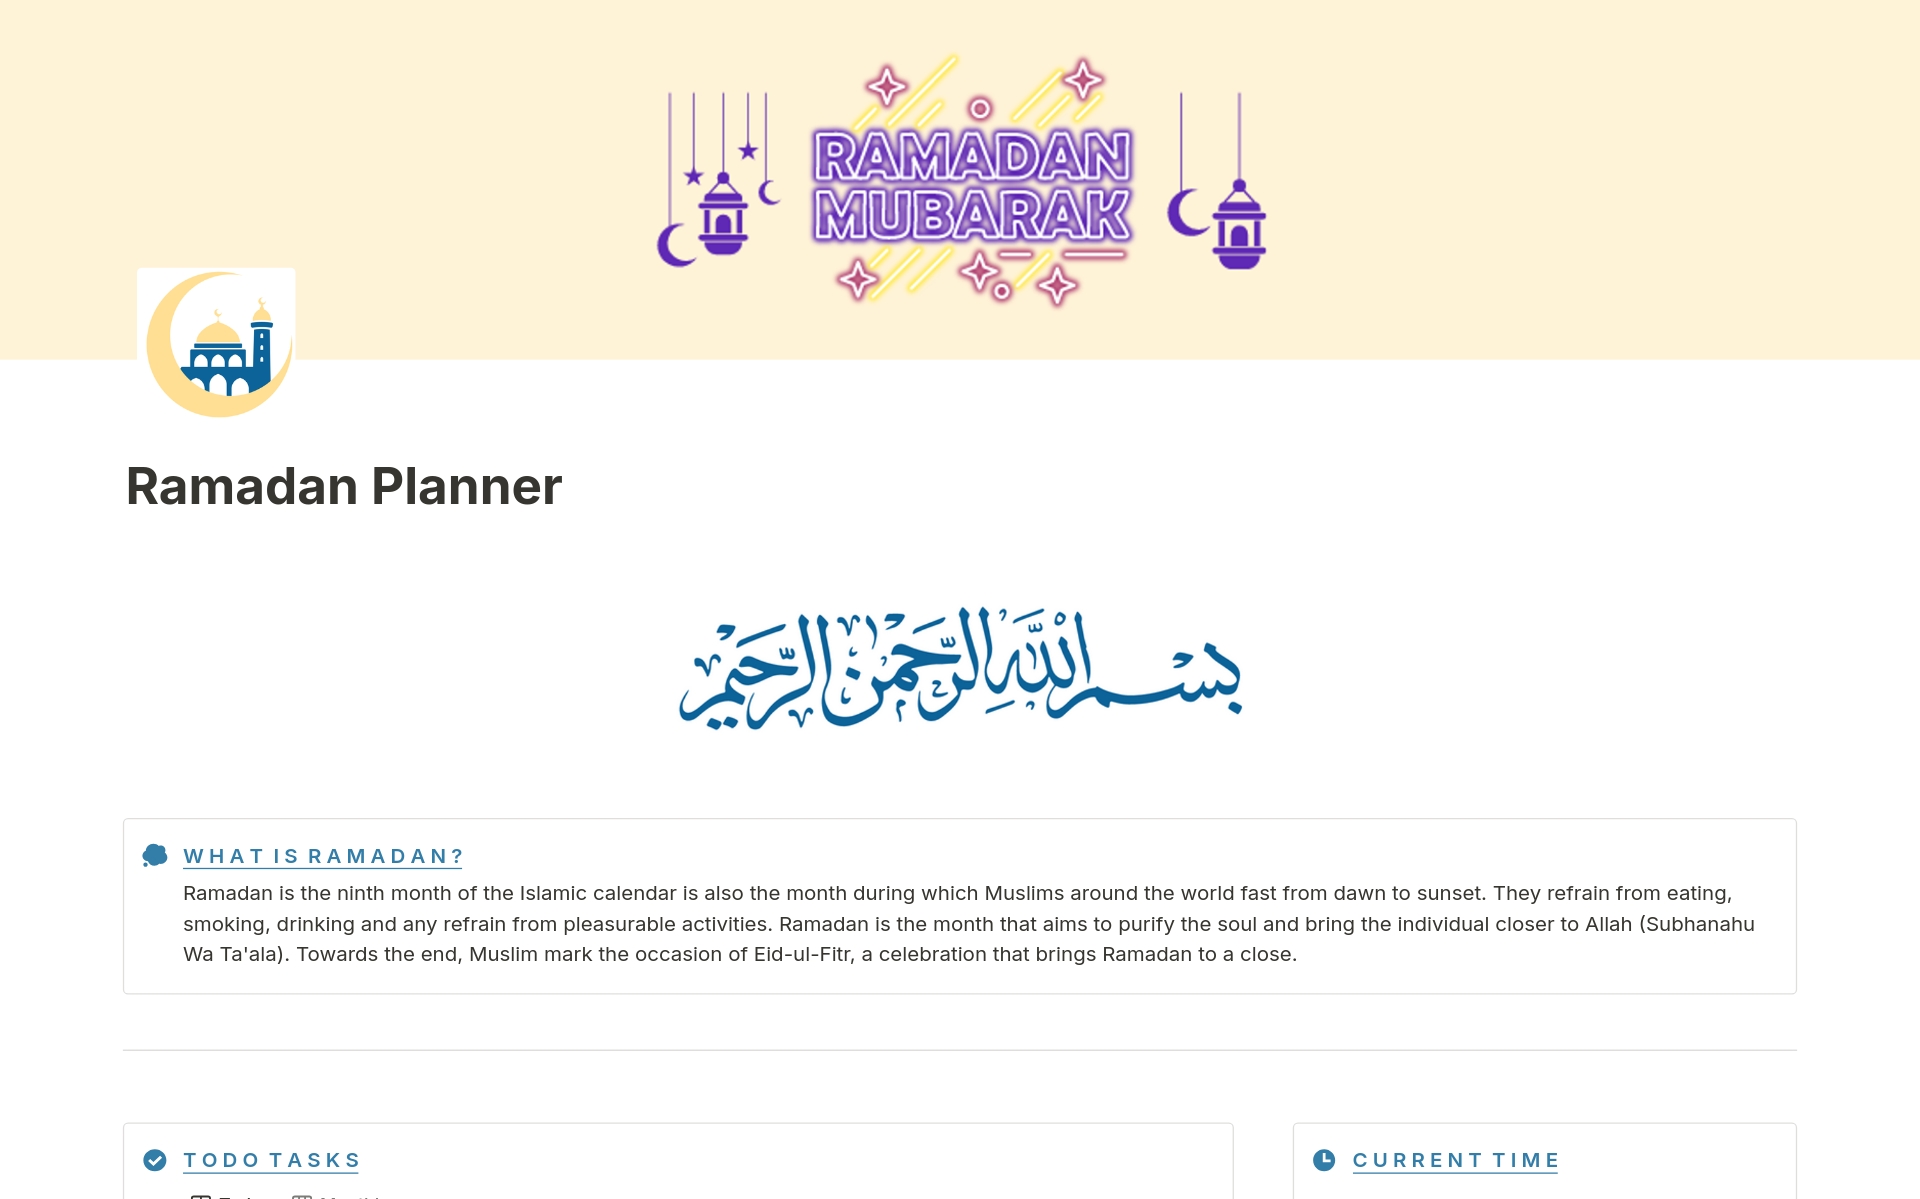 Uma prévia do modelo para Ramadan Planner